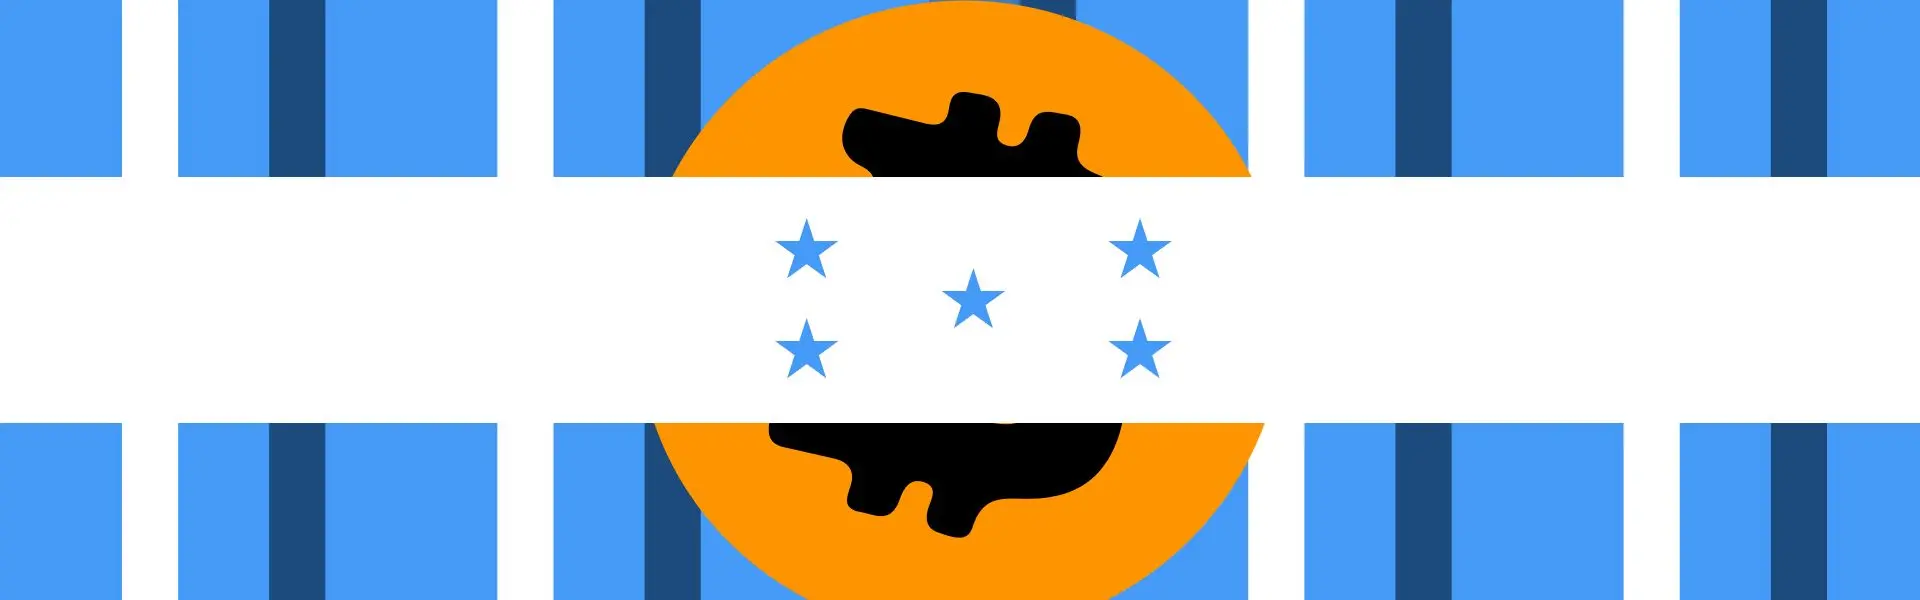 Уряд Гондурасу заборонив банкам надавати послуги з біткоїн.